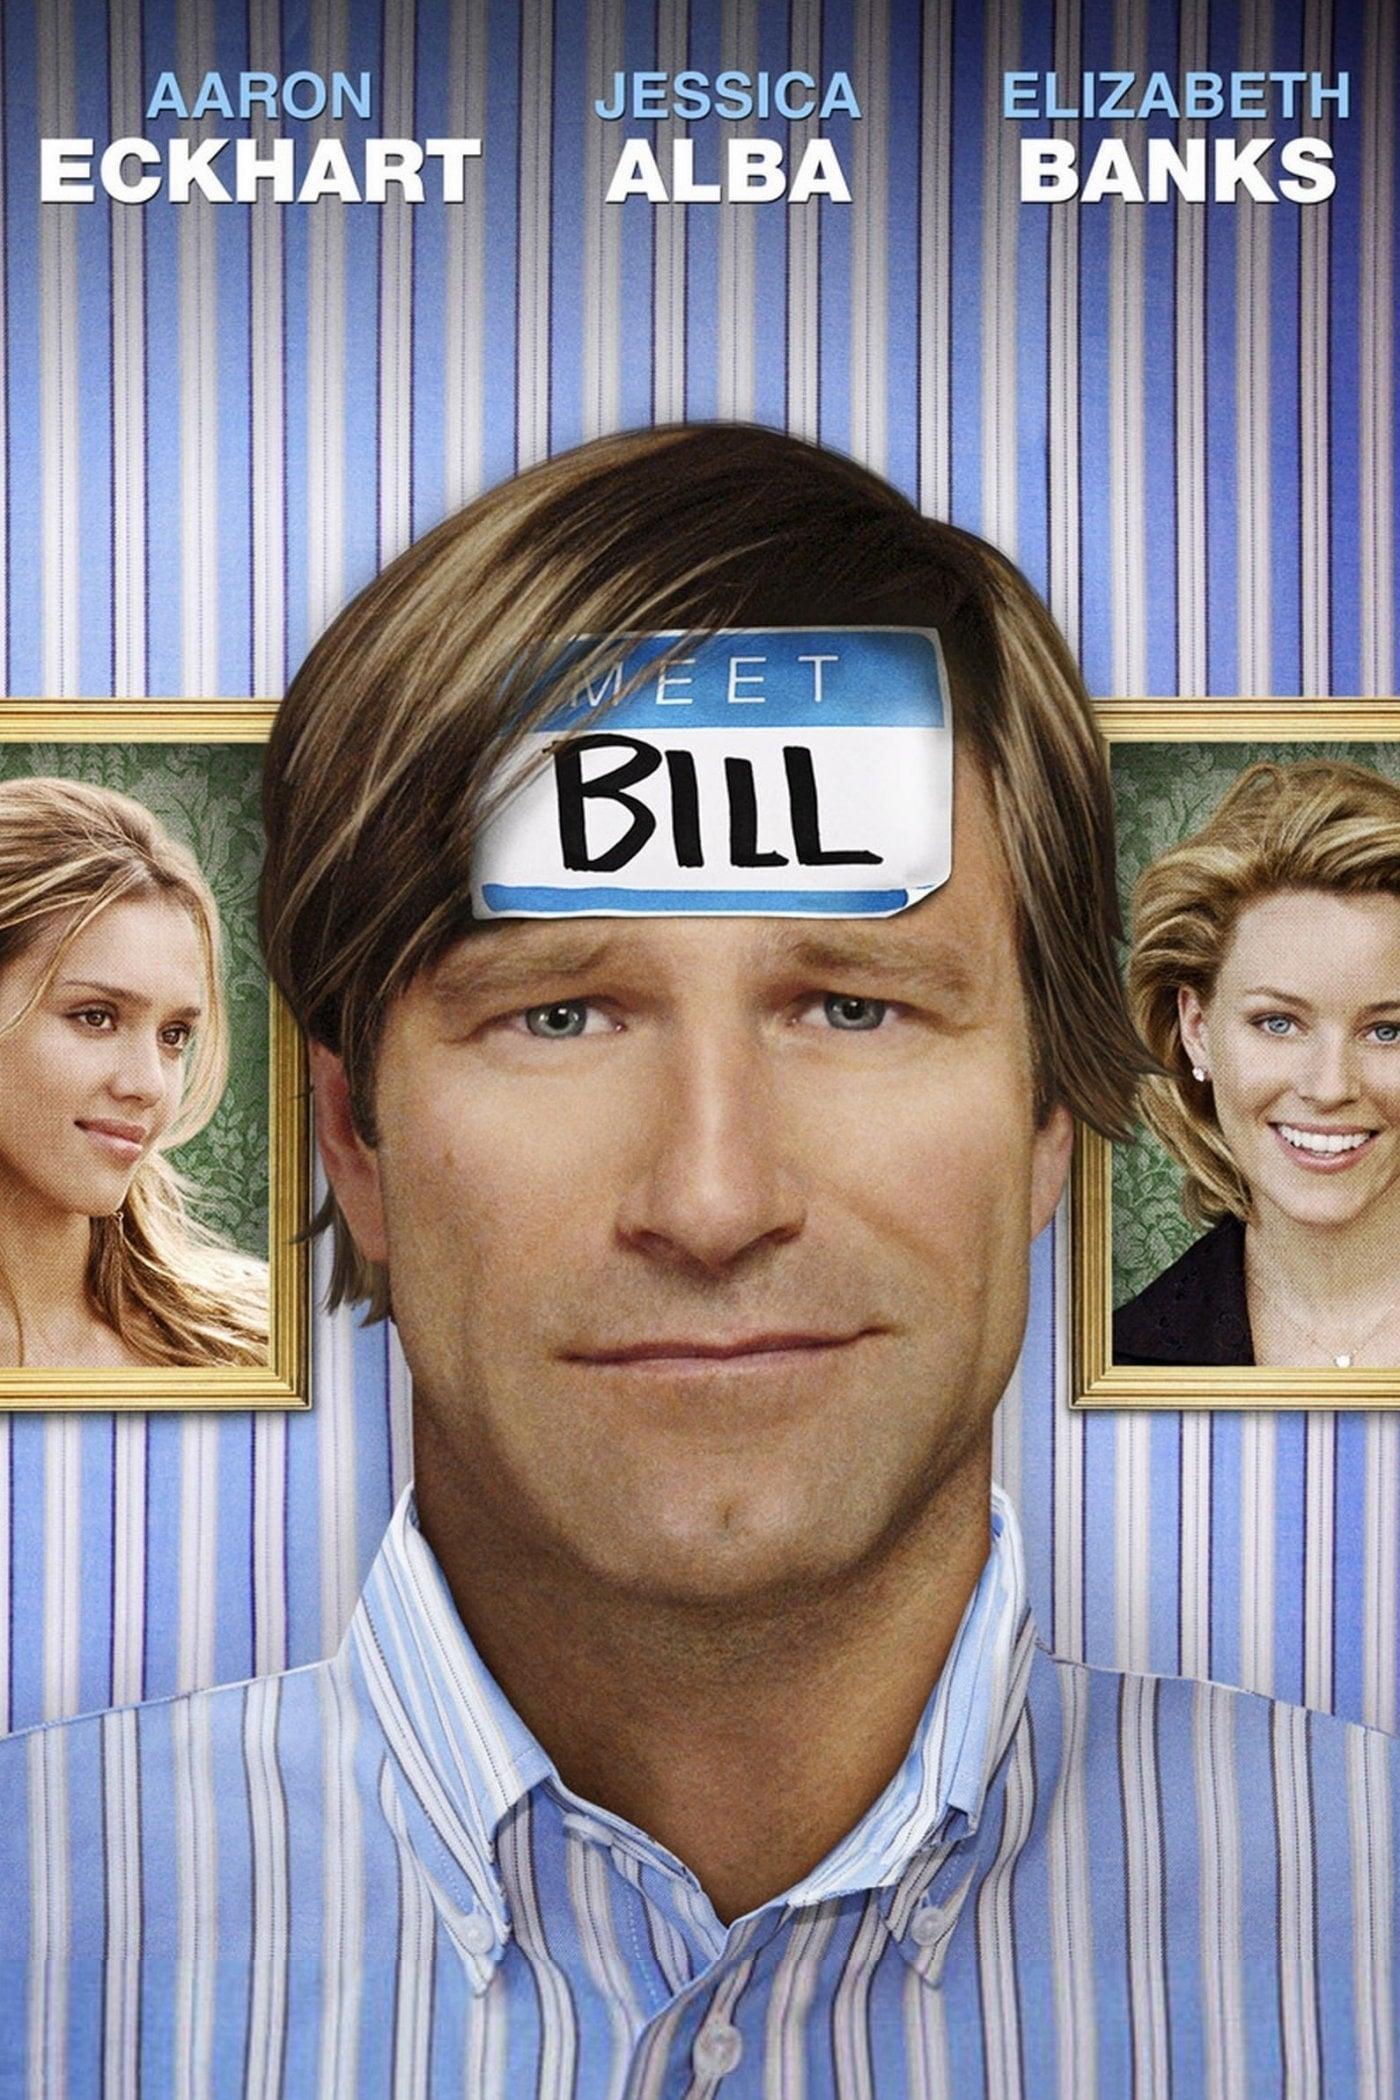 Meet Bill poster